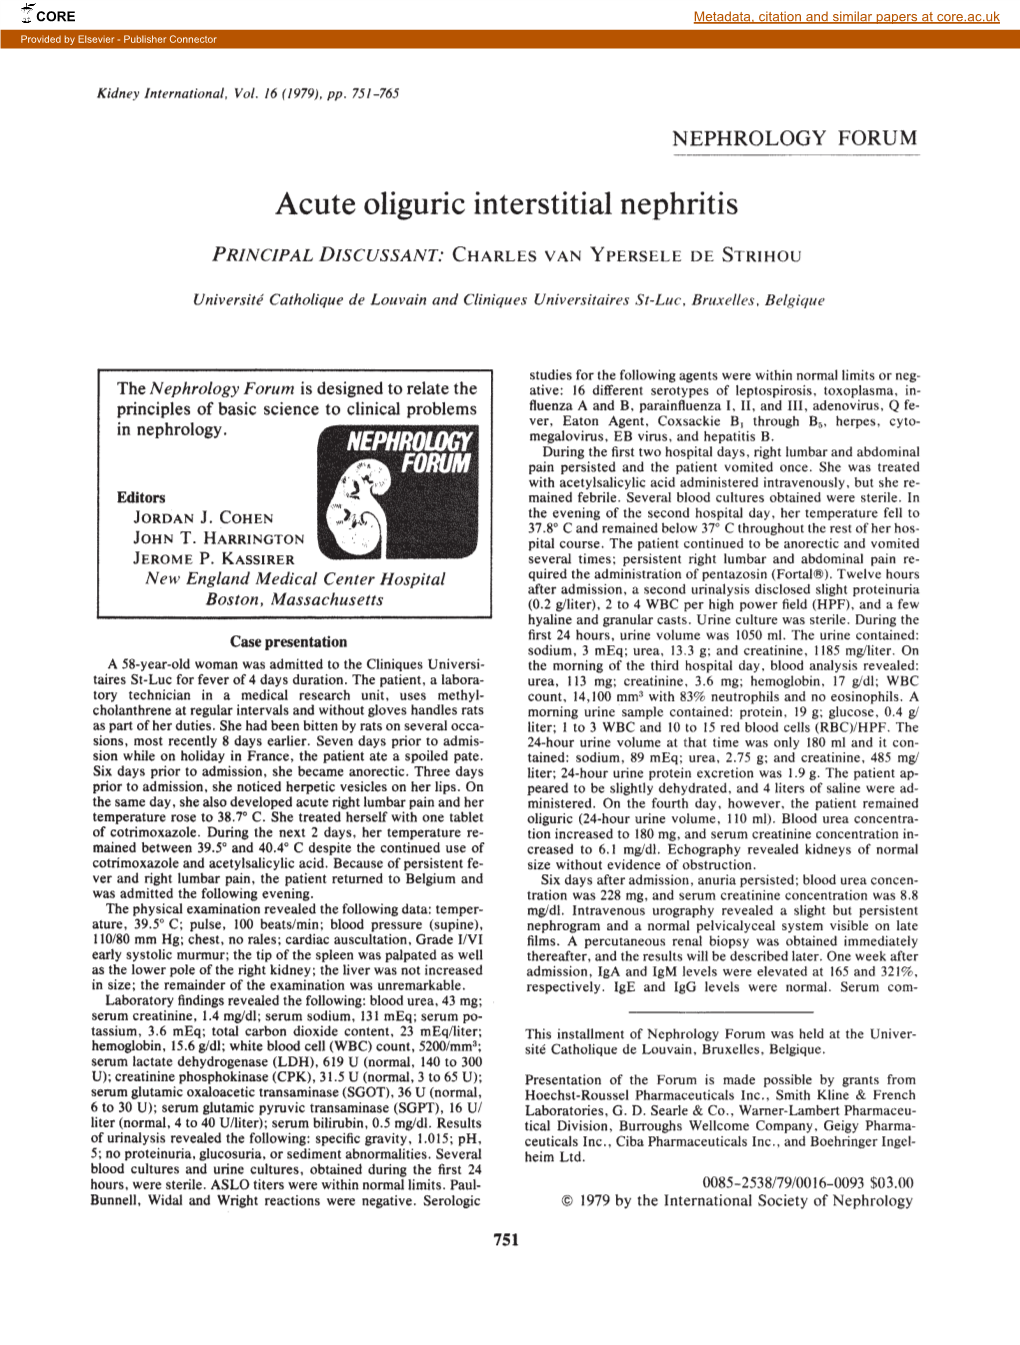 Acute Oliguric Interstitial Nephritis